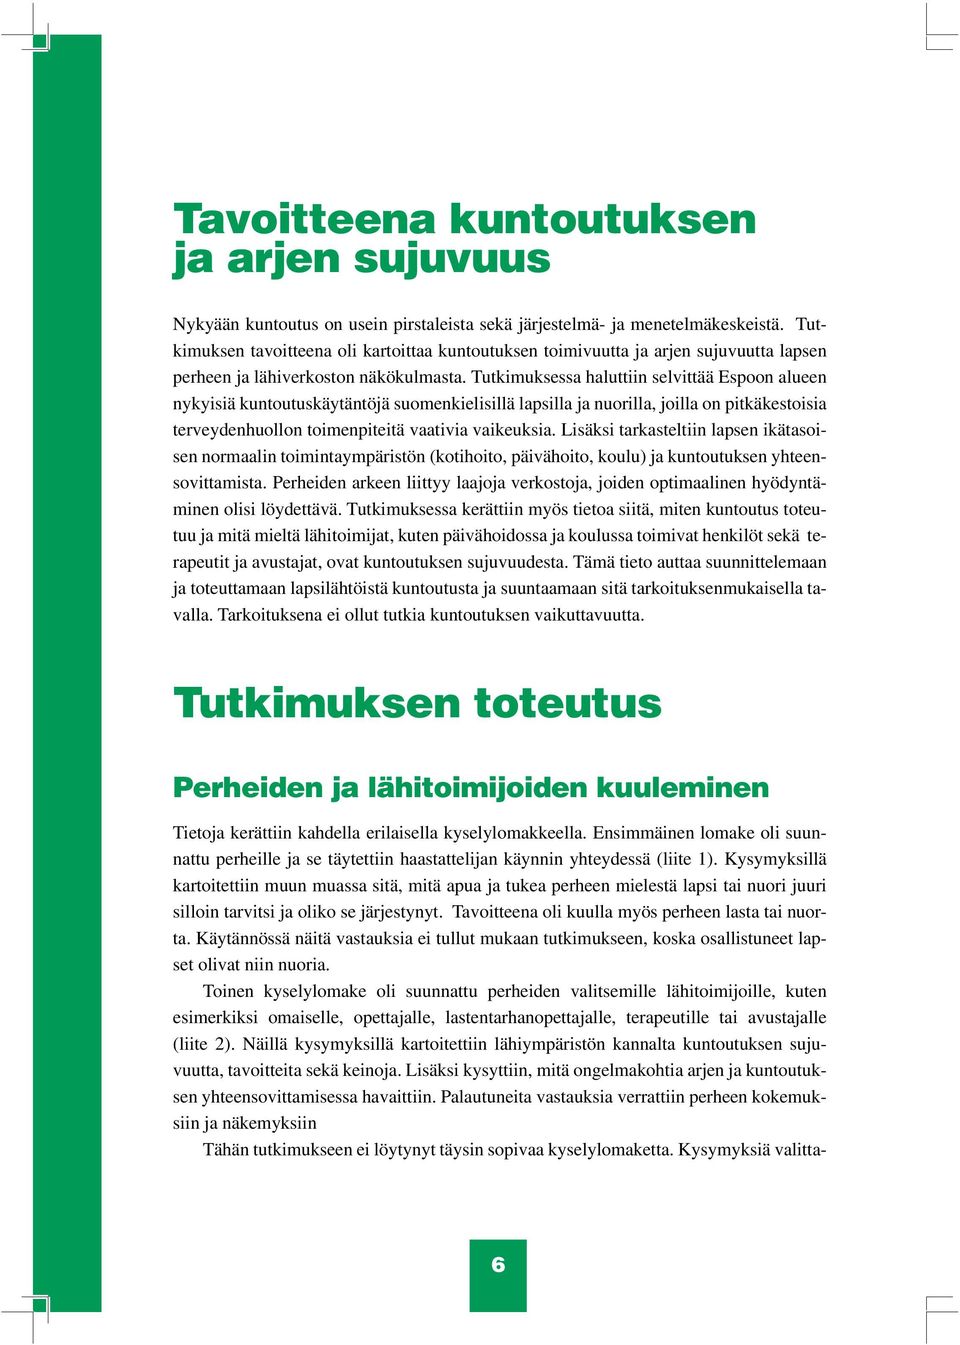 Tutkimuksessa haluttiin selvittää Espoon alueen nykyisiä kuntoutuskäytäntöjä suomenkielisillä lapsilla ja nuorilla, joilla on pitkäkestoisia terveydenhuollon toimenpiteitä vaativia vaikeuksia.